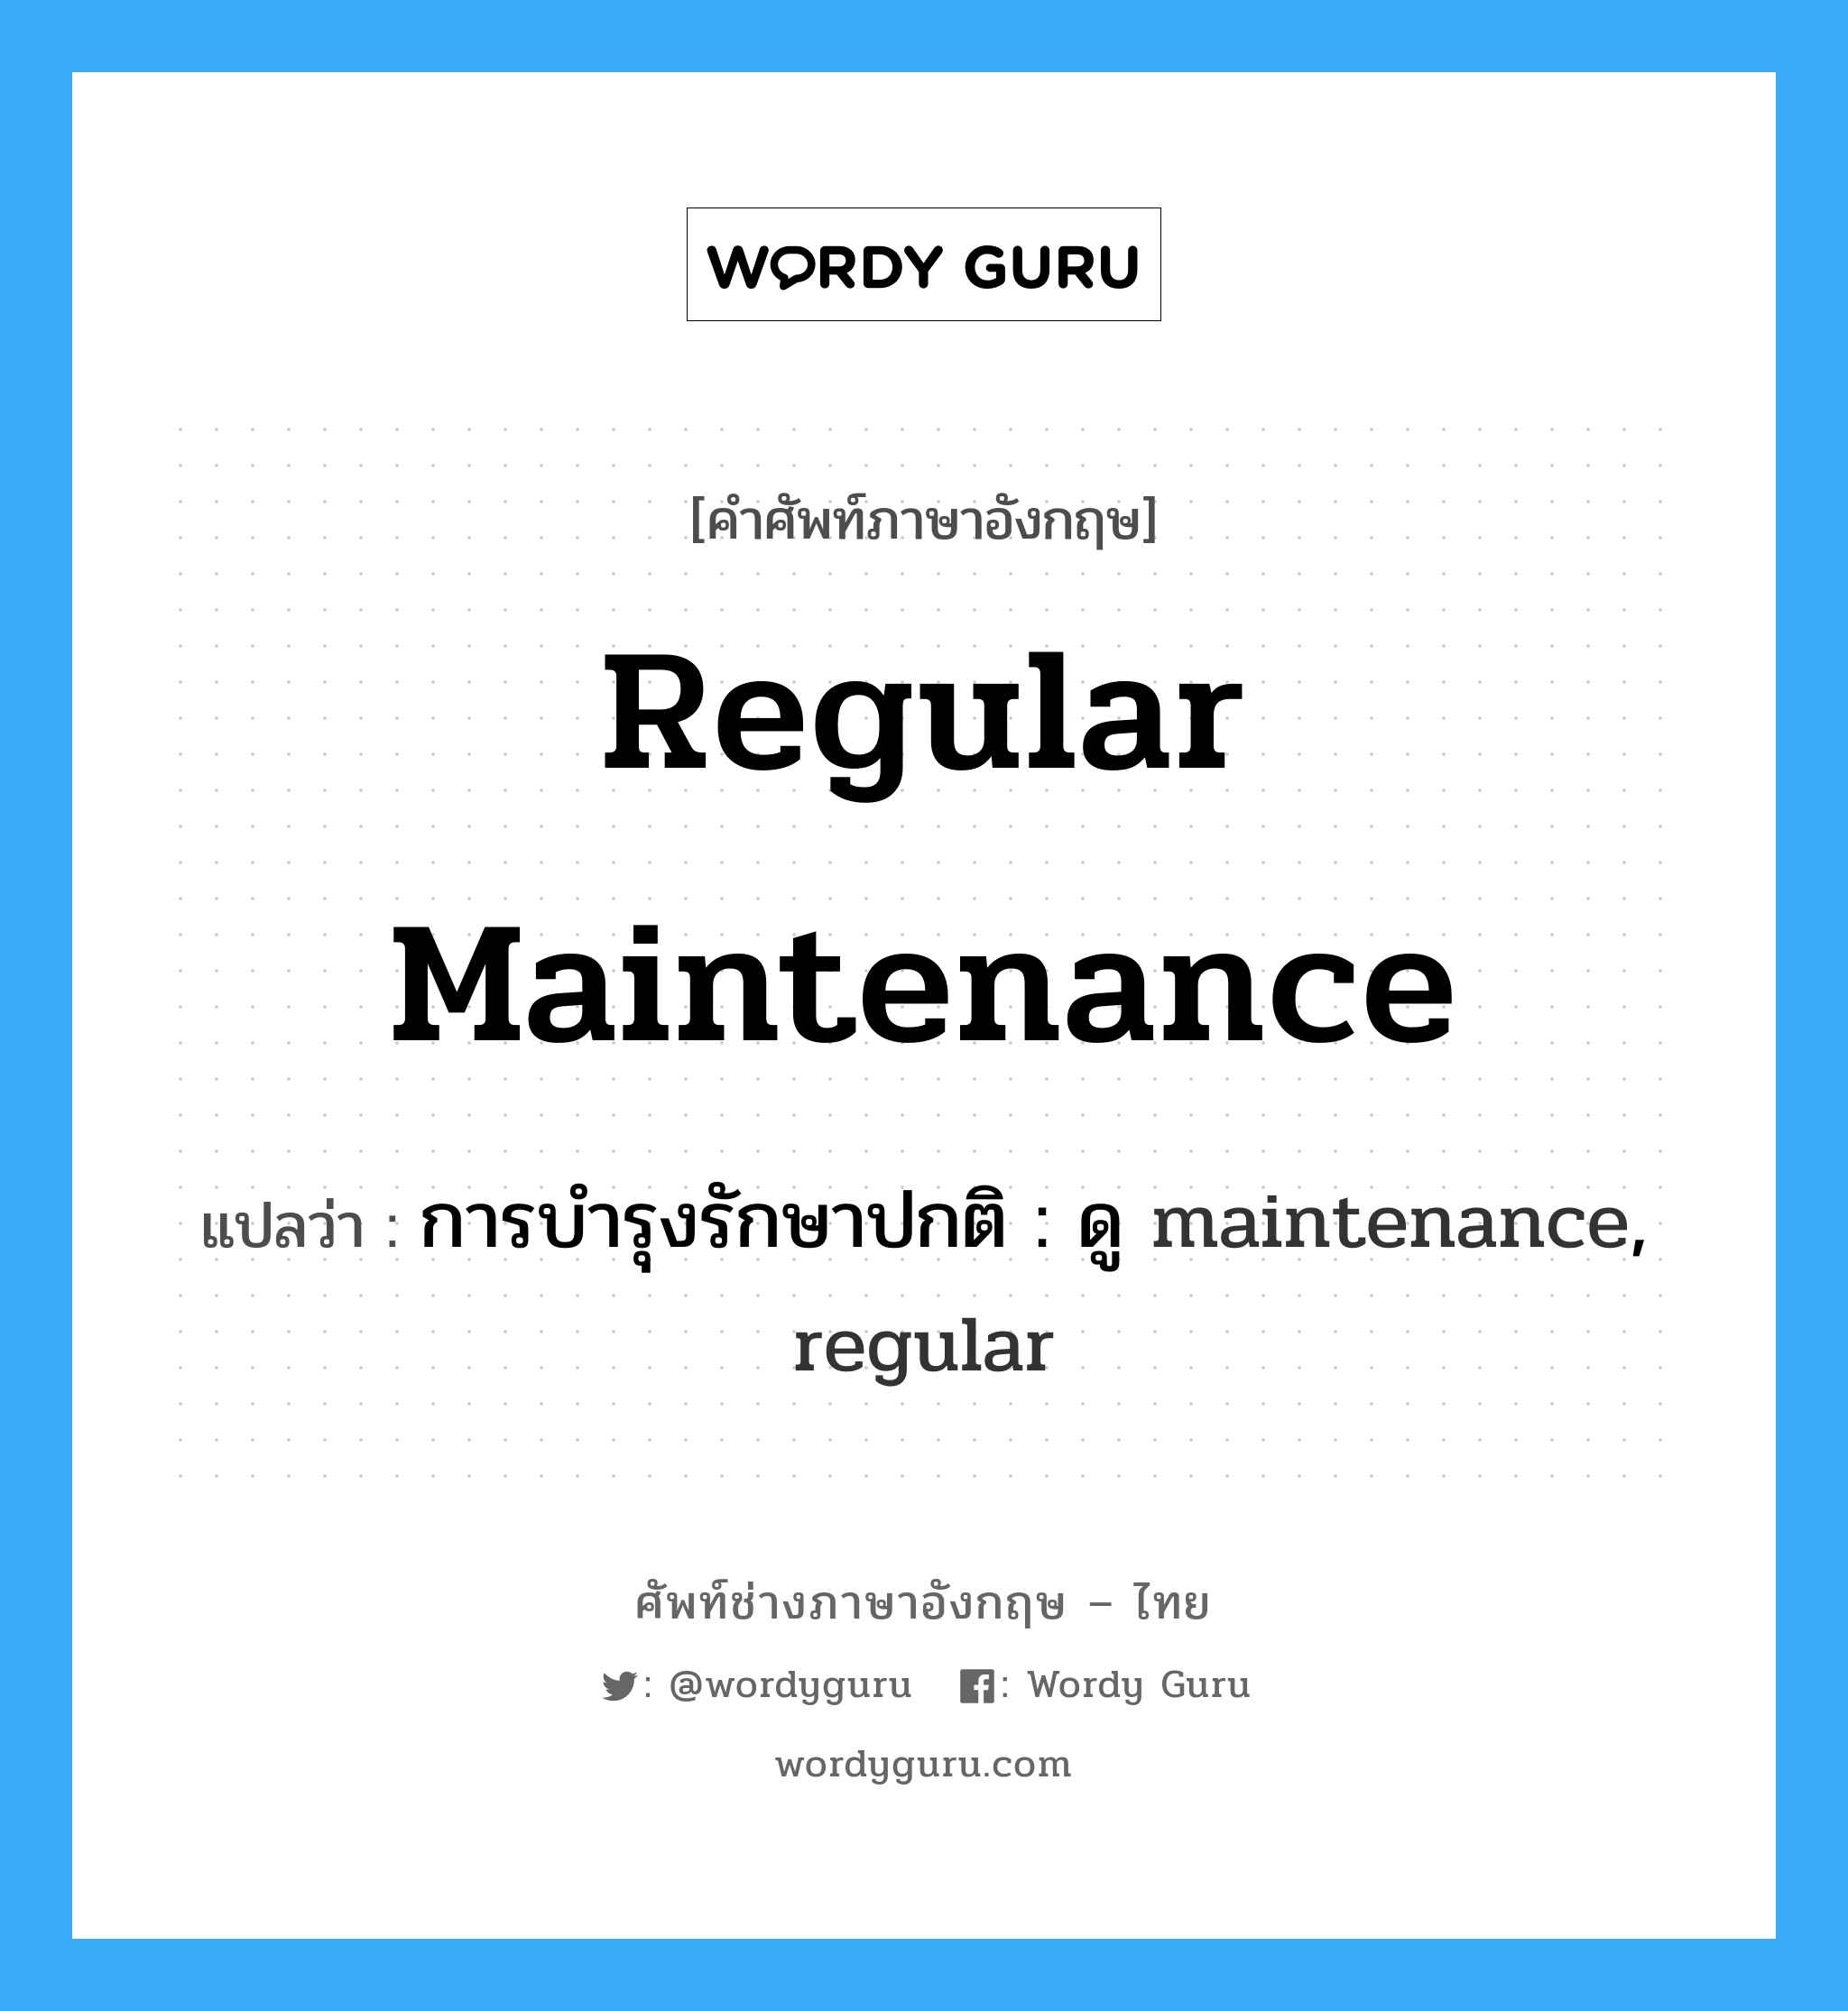 การบำรุงรักษาปกติ : ดู maintenance, regular ภาษาอังกฤษ?, คำศัพท์ช่างภาษาอังกฤษ - ไทย การบำรุงรักษาปกติ : ดู maintenance, regular คำศัพท์ภาษาอังกฤษ การบำรุงรักษาปกติ : ดู maintenance, regular แปลว่า regular maintenance